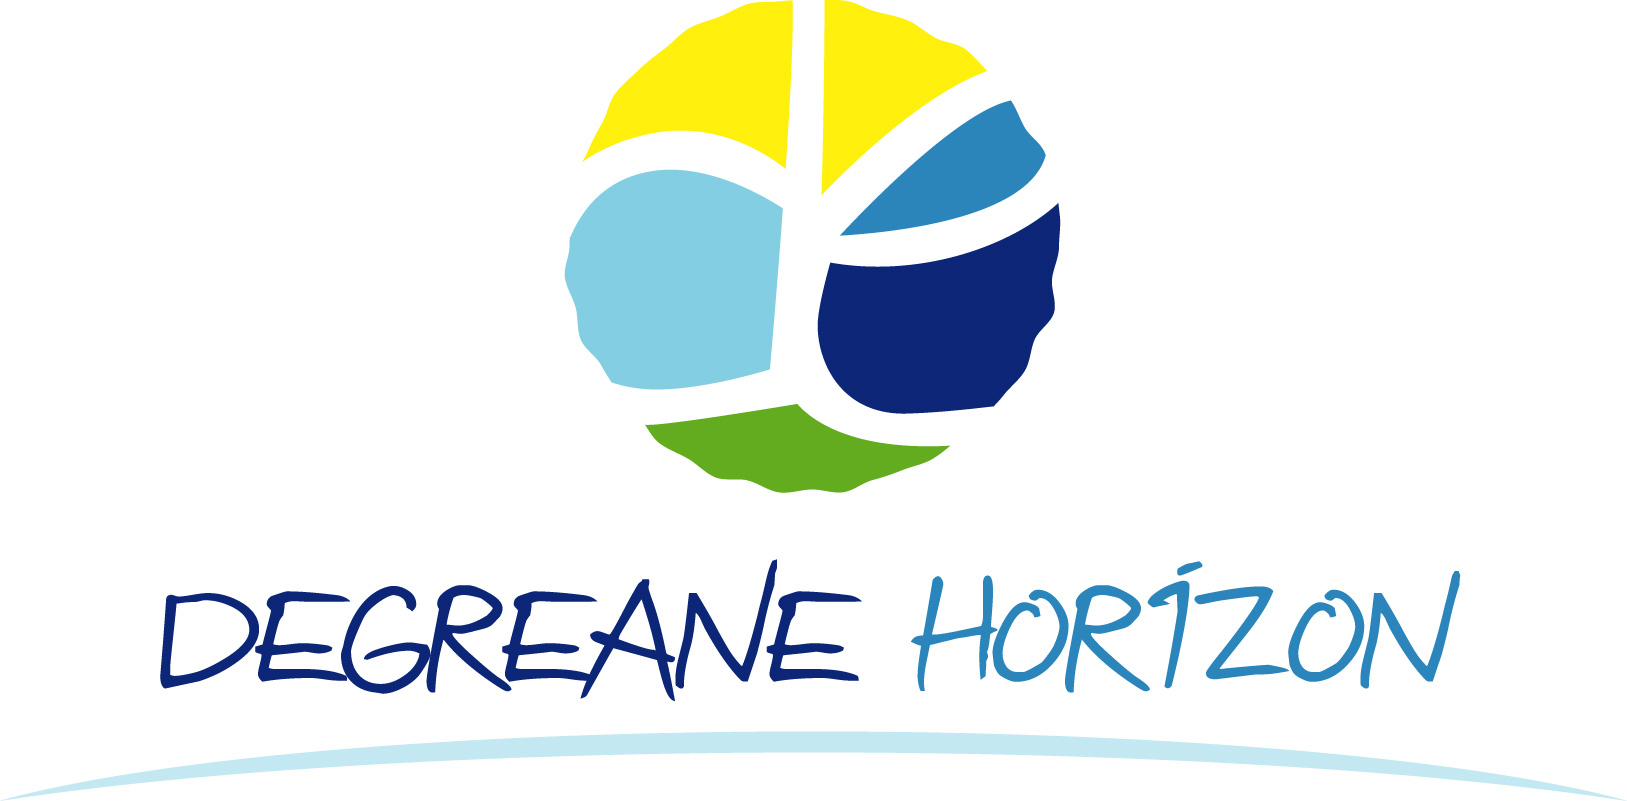 Degreane Horizon logo